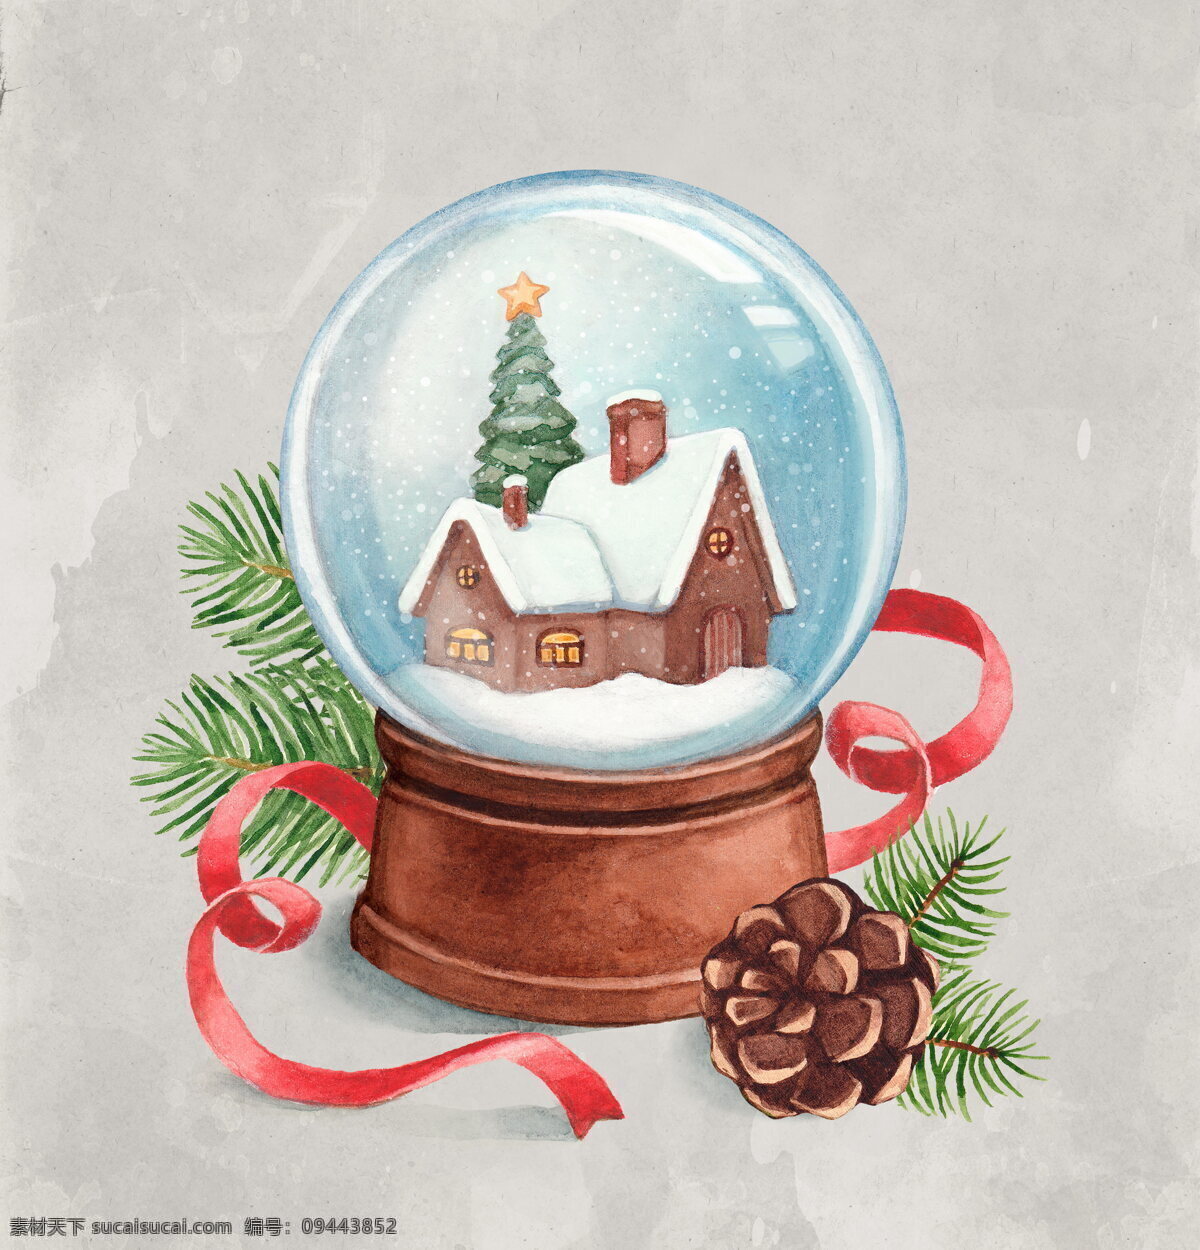 圣诞 水晶球 彩带 插画 圣诞节 圣诞素材 雪屋 装饰物 圣诞水晶球 冷杉 节日素材